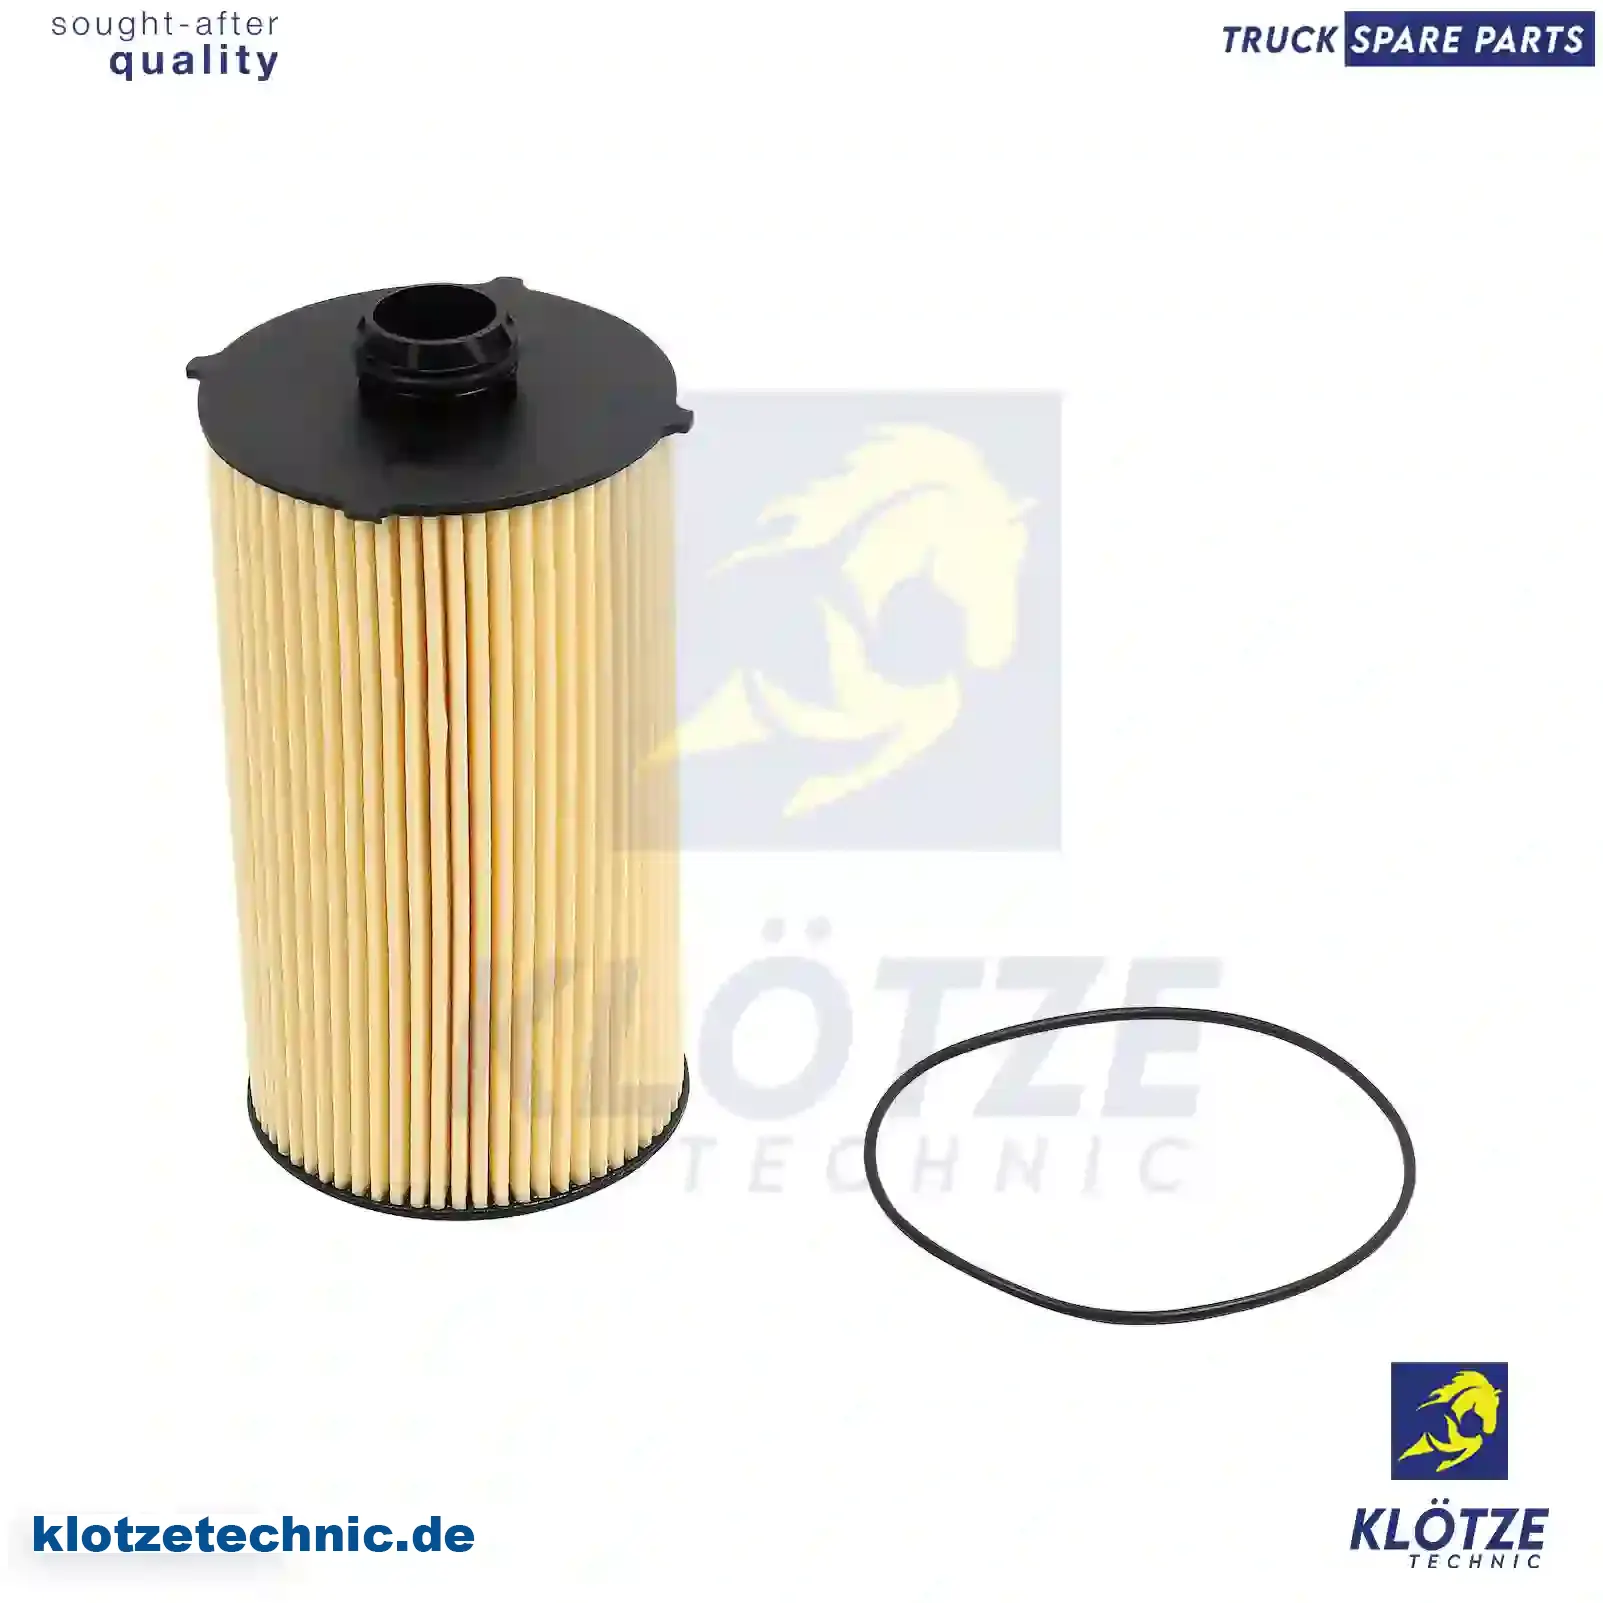 Oil filter insert, 5801415504 || Klötze Technic